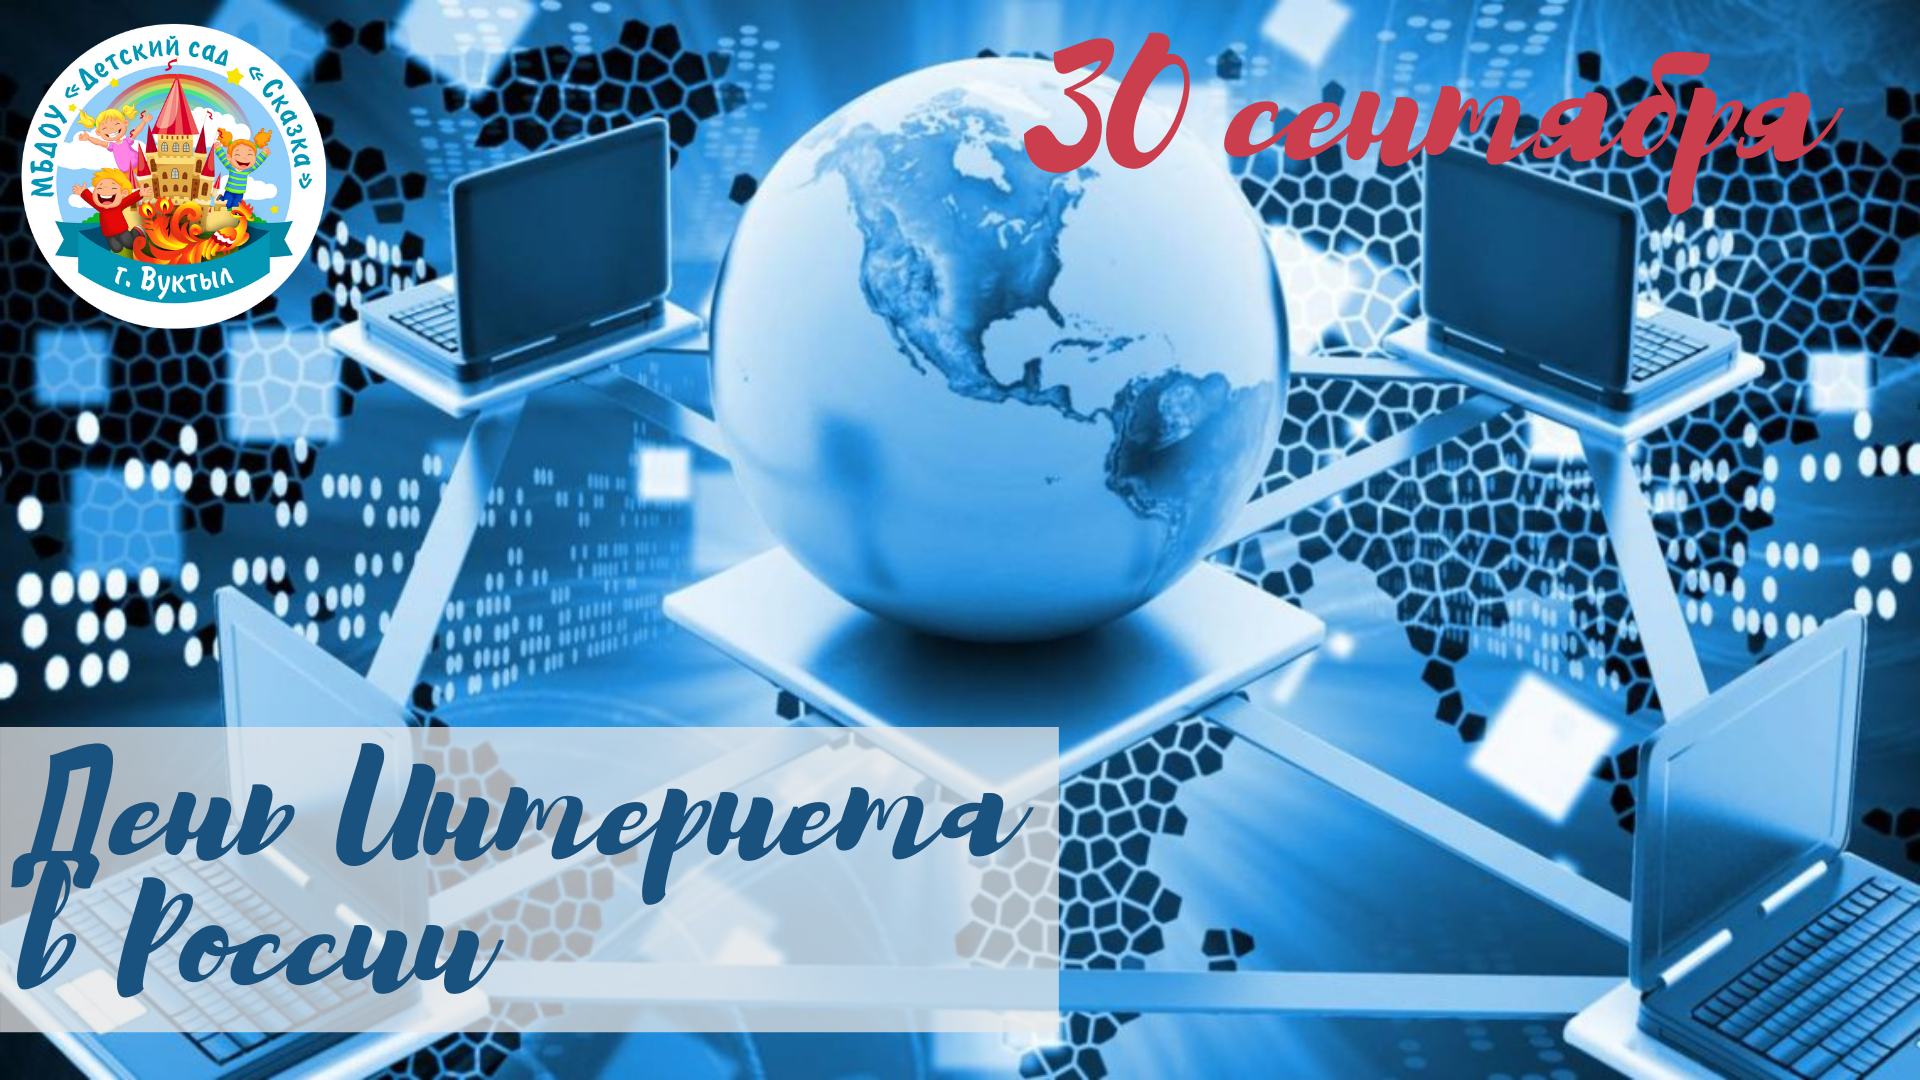 Поздравление день интернета. День интернета в России. Поздравление с днем интернета. Всемирный день интернета. 30 Сентября день интернета.